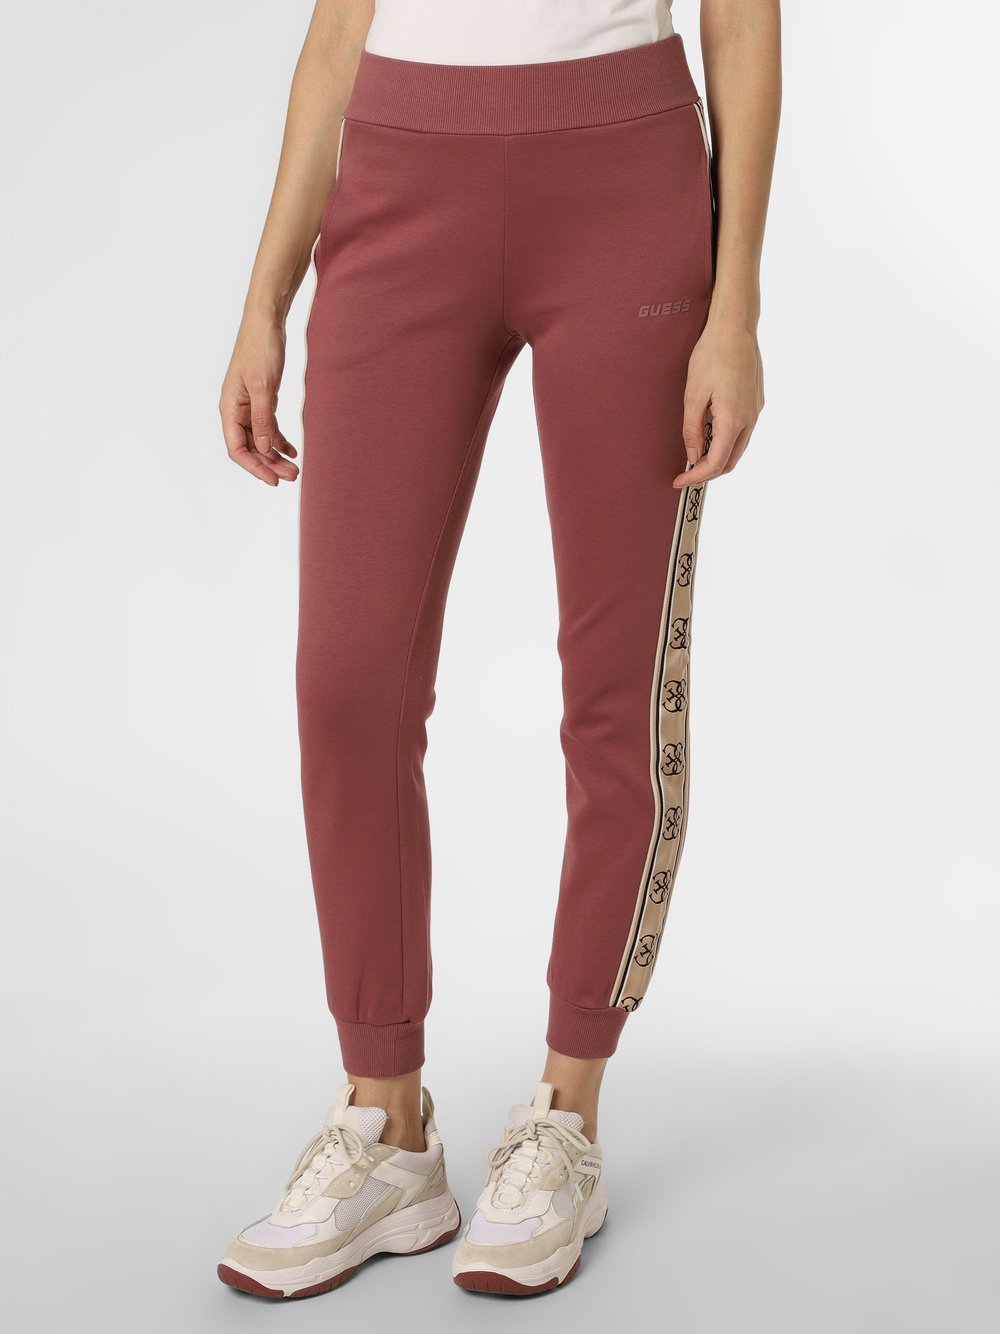 GUESS - Damskie spodnie dresowe, różowy|lila